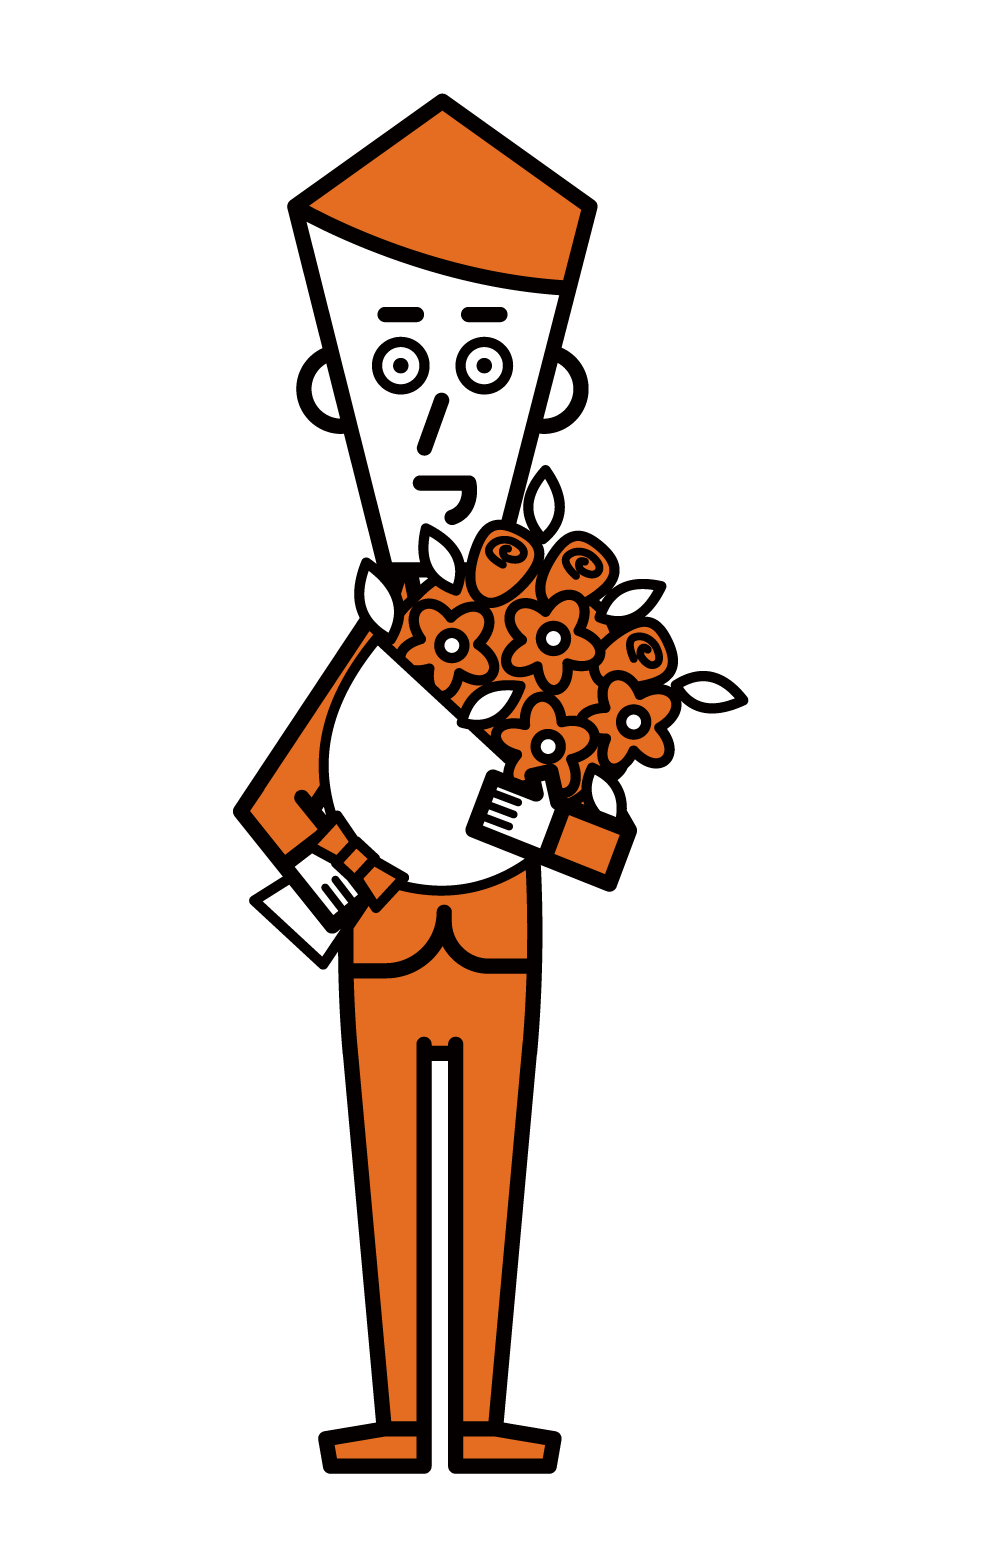 送花的人（男性）的插圖